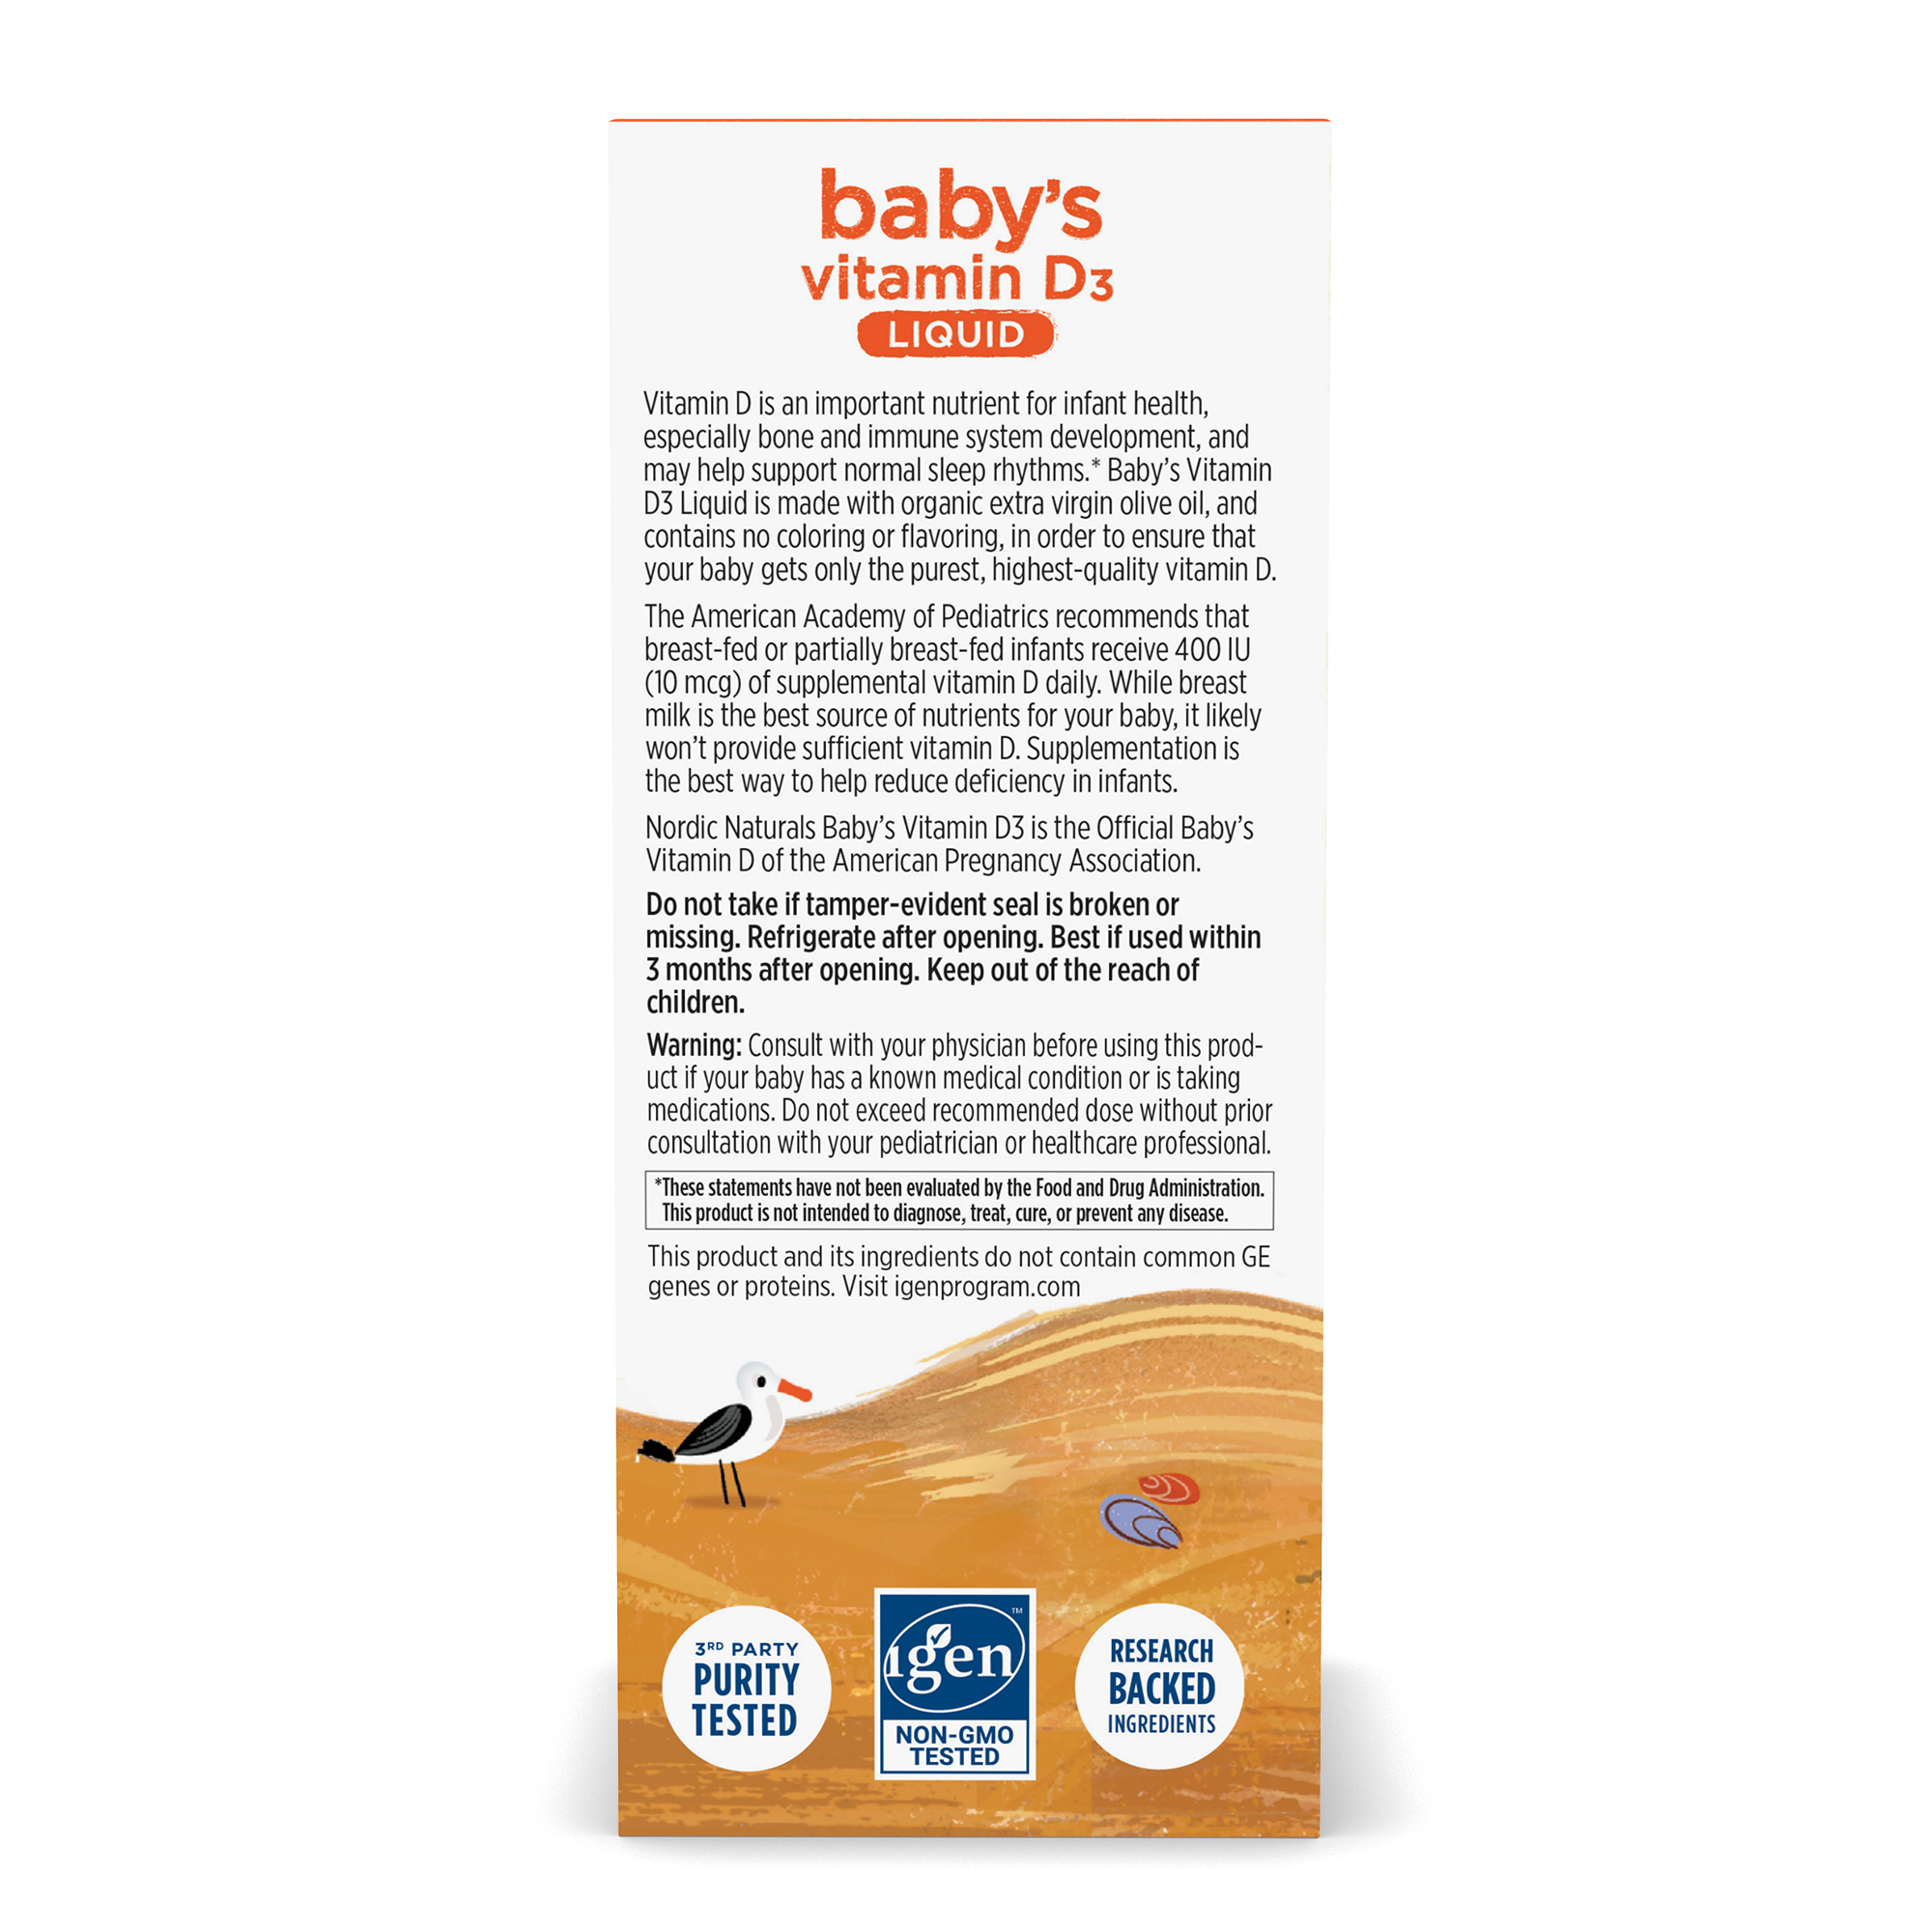 Syro Baby Vitamin D3 Nordic Naturals, Vitamin D3 tự nhiên cho bé, 400IU, lọ 22.5ml - Hàng Chính Hãng